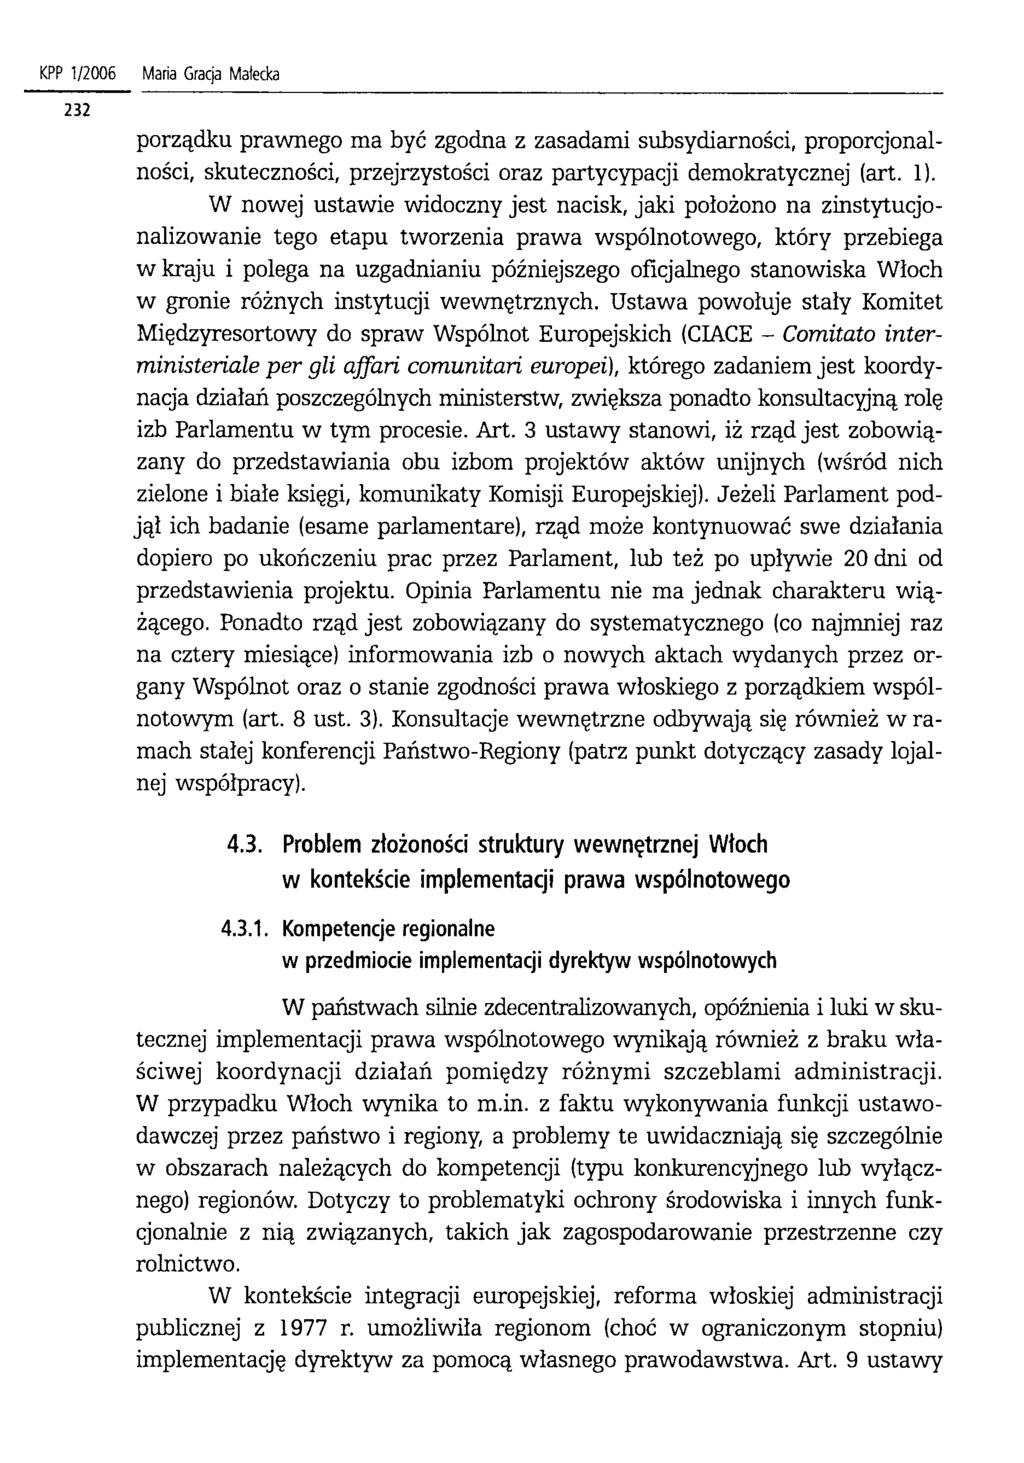 KPP 1/2006 Maria Gracja Małecka porządku prawnego ma być zgodna z zasadami subsydiarności, proporcjonalności, skuteczności, przejrzystości oraz partycypacji demokratycznej (art. 1).